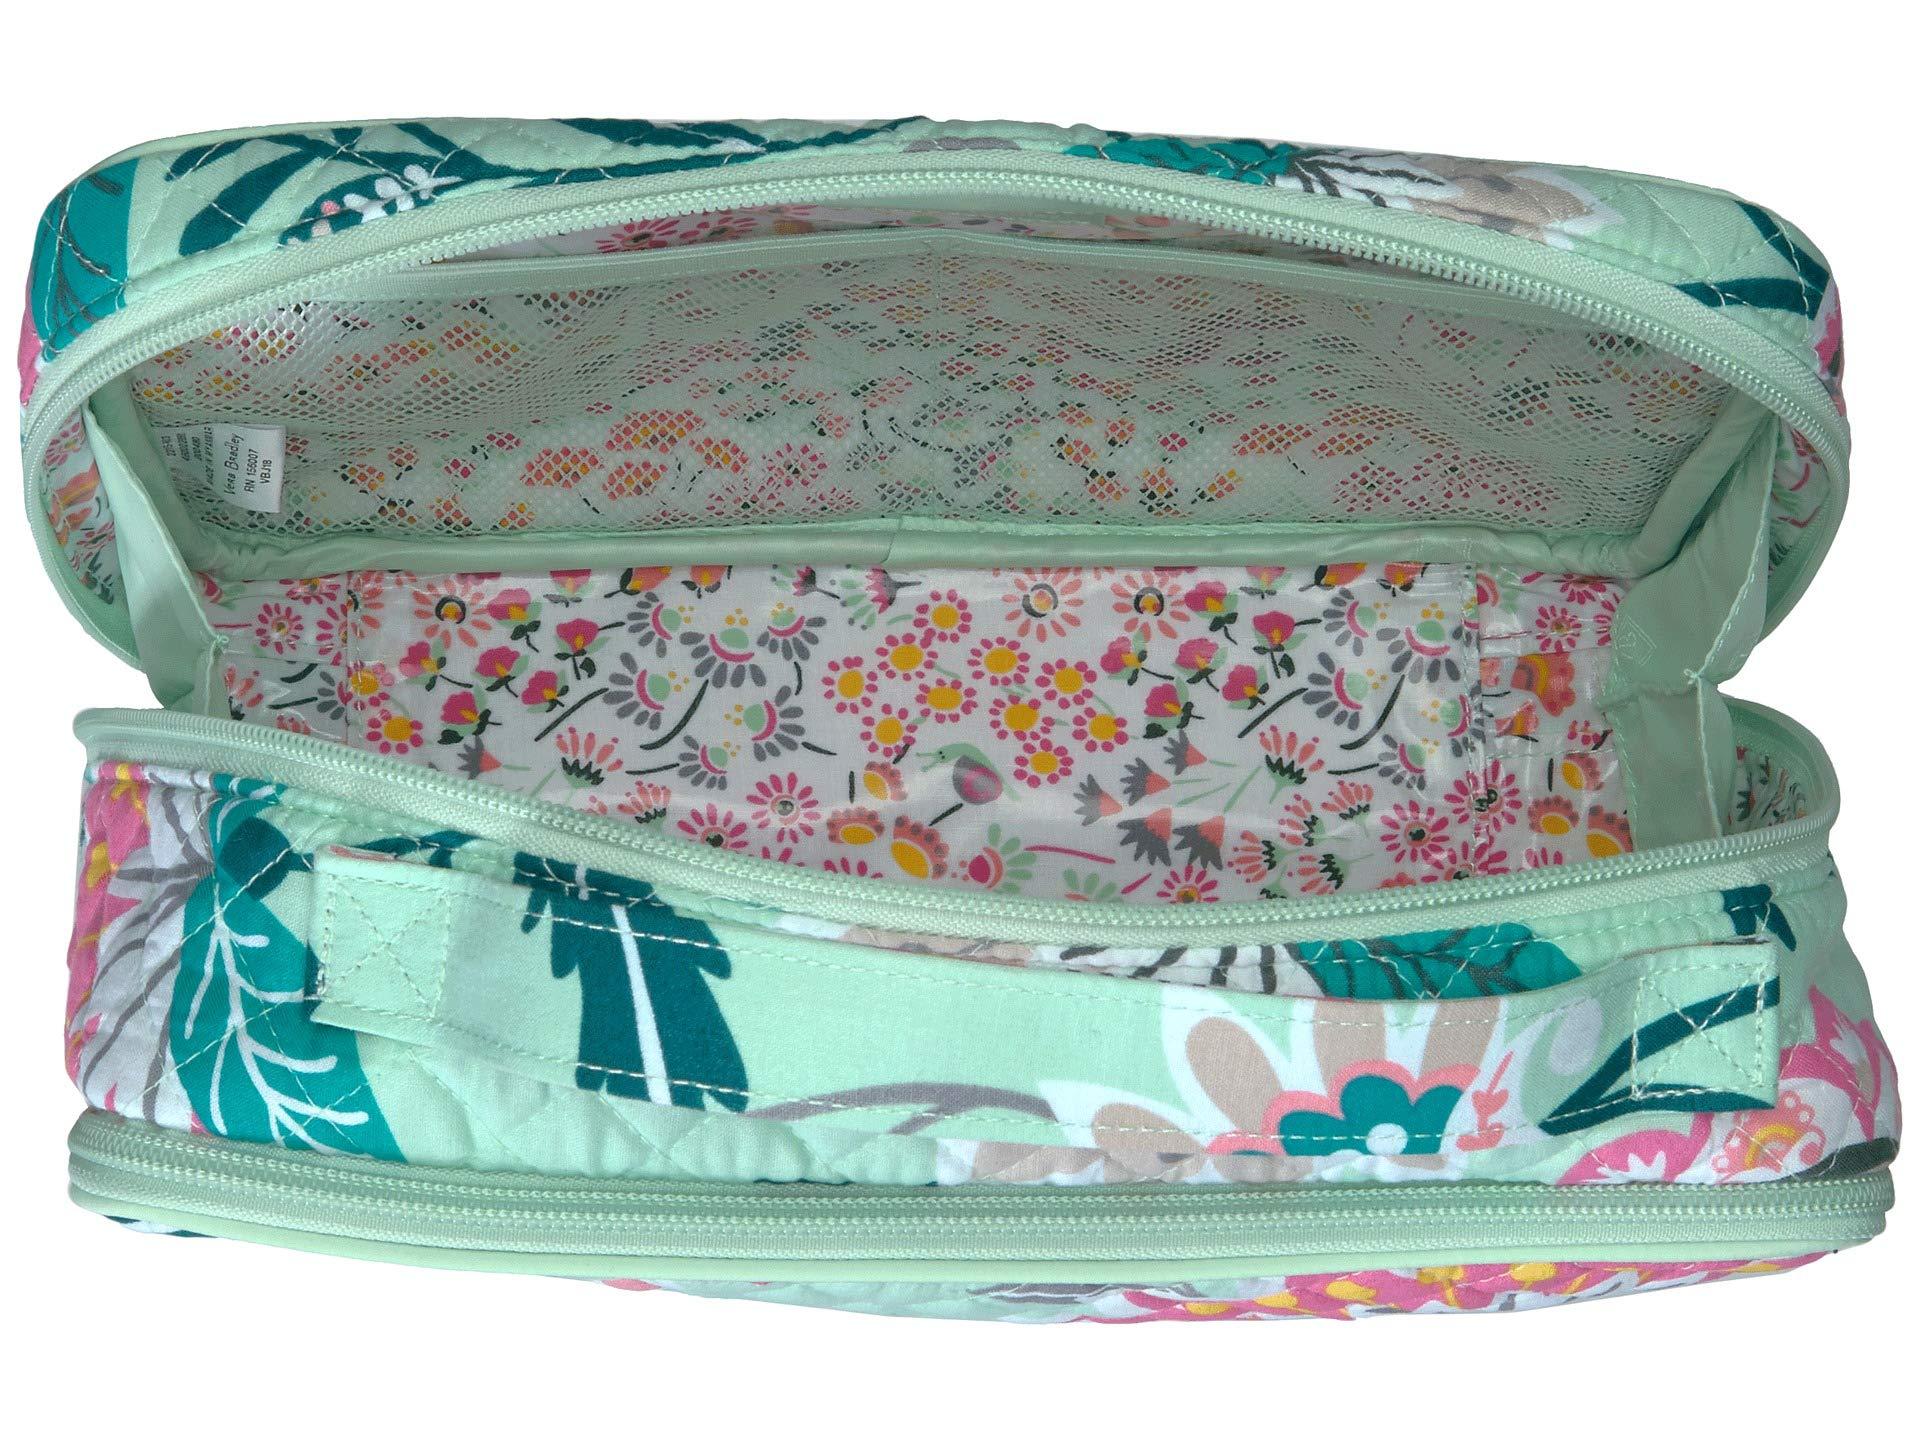 Vera Bradley Iconic Large Blush Brush Case (mint Flowers) Luggage in ...